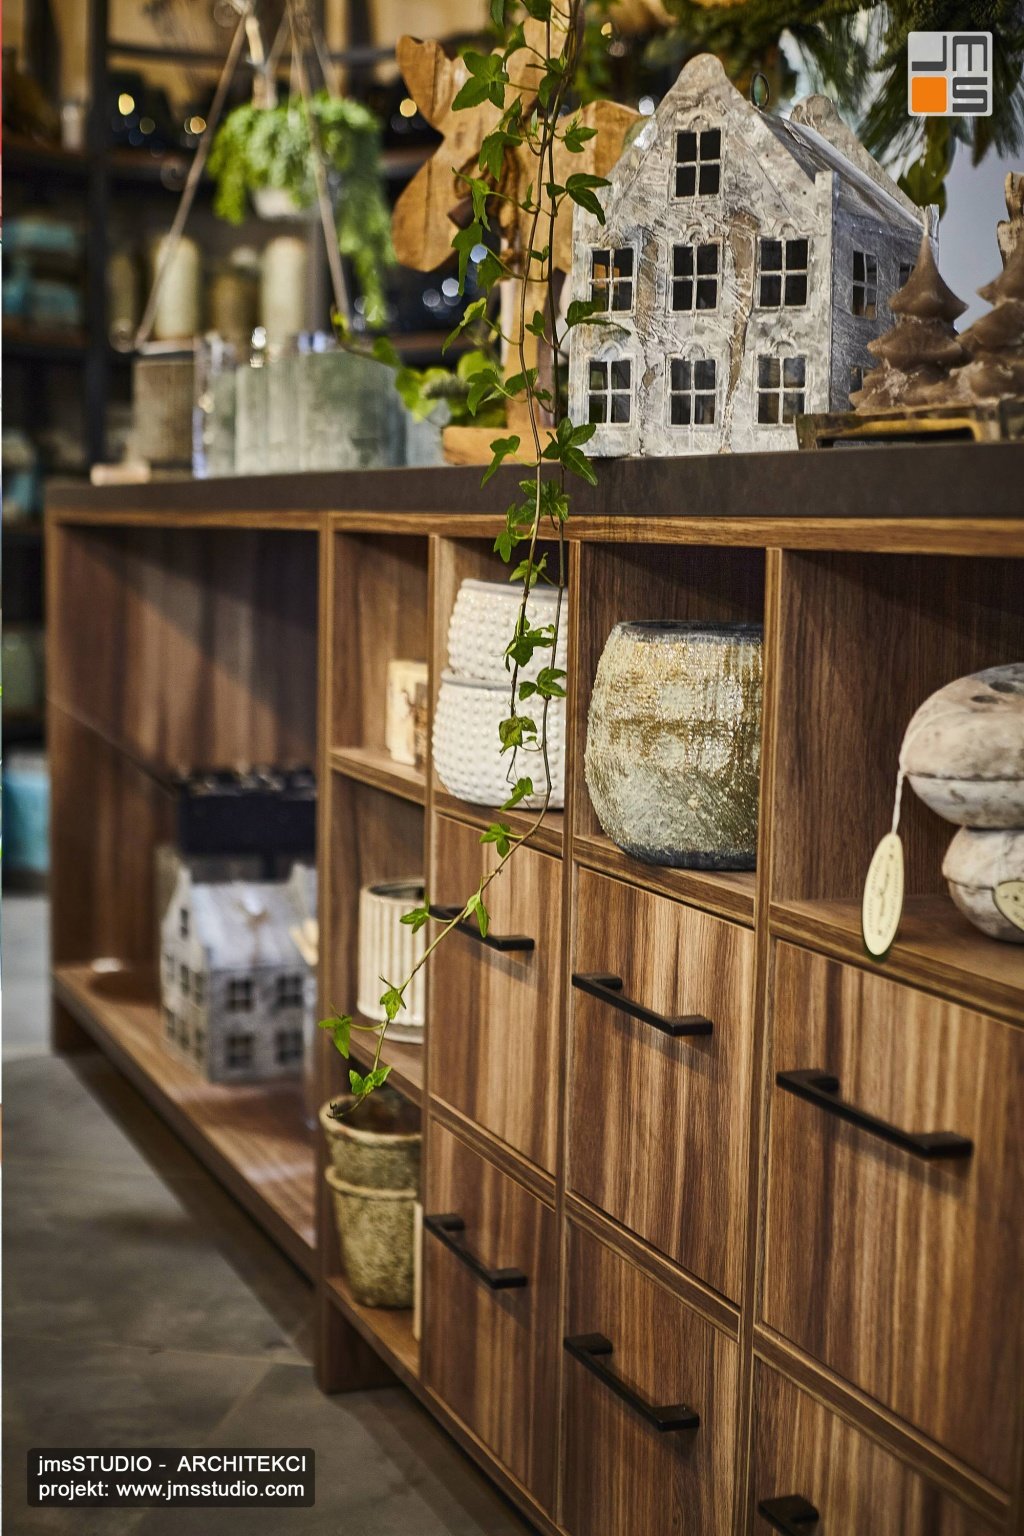 Drewniana komoda projektowana na zamówienie w fornirze orzechowym to elegancki ekspozytor w projekcie wnętrz kwiaciarni w Krakowie